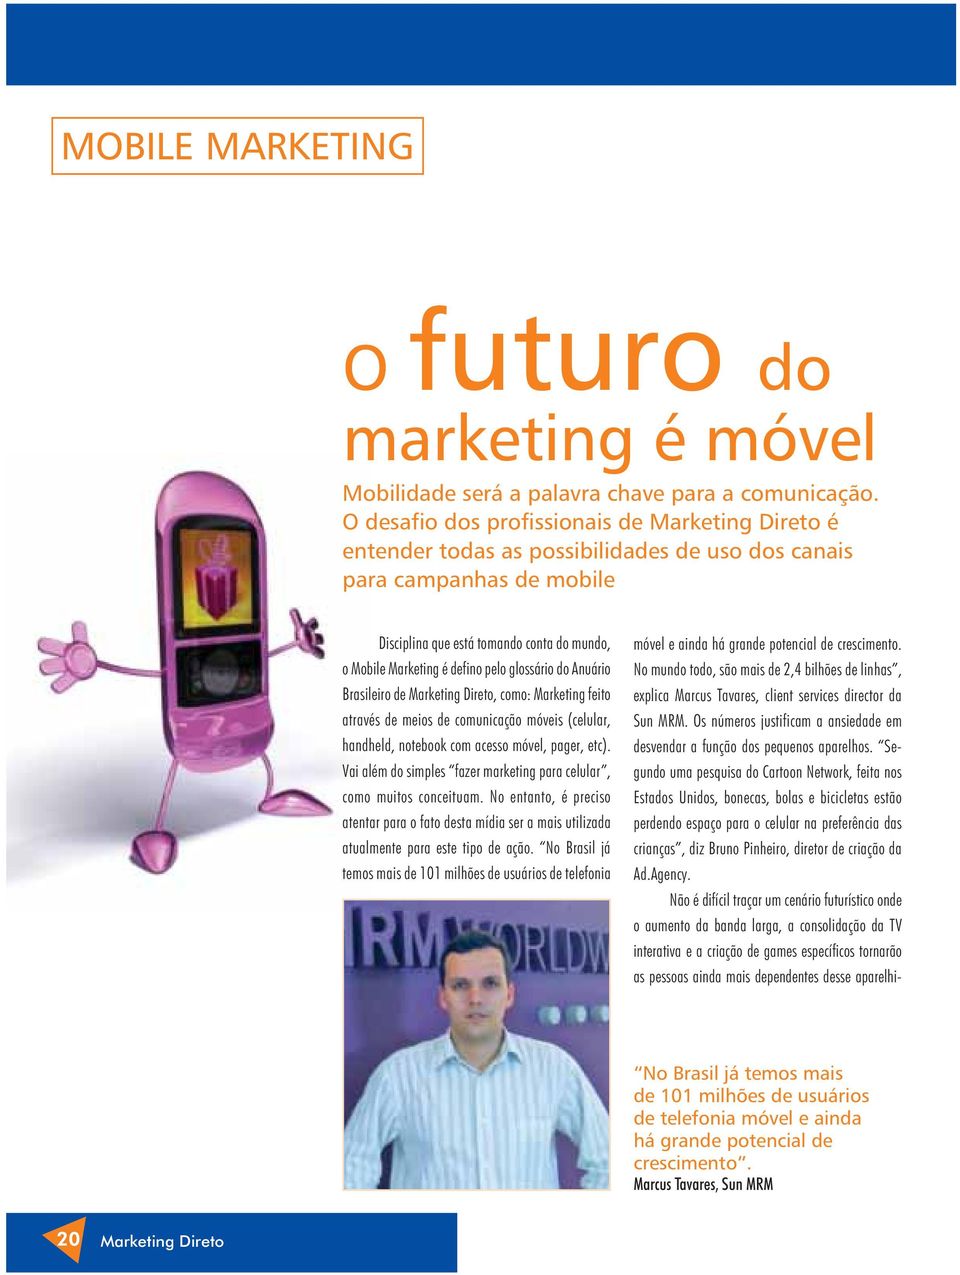 Anuário Brasileiro de, como: Marketing feito através de meios de comunicação móveis (celular, handheld, notebook com acesso móvel, pager, etc).